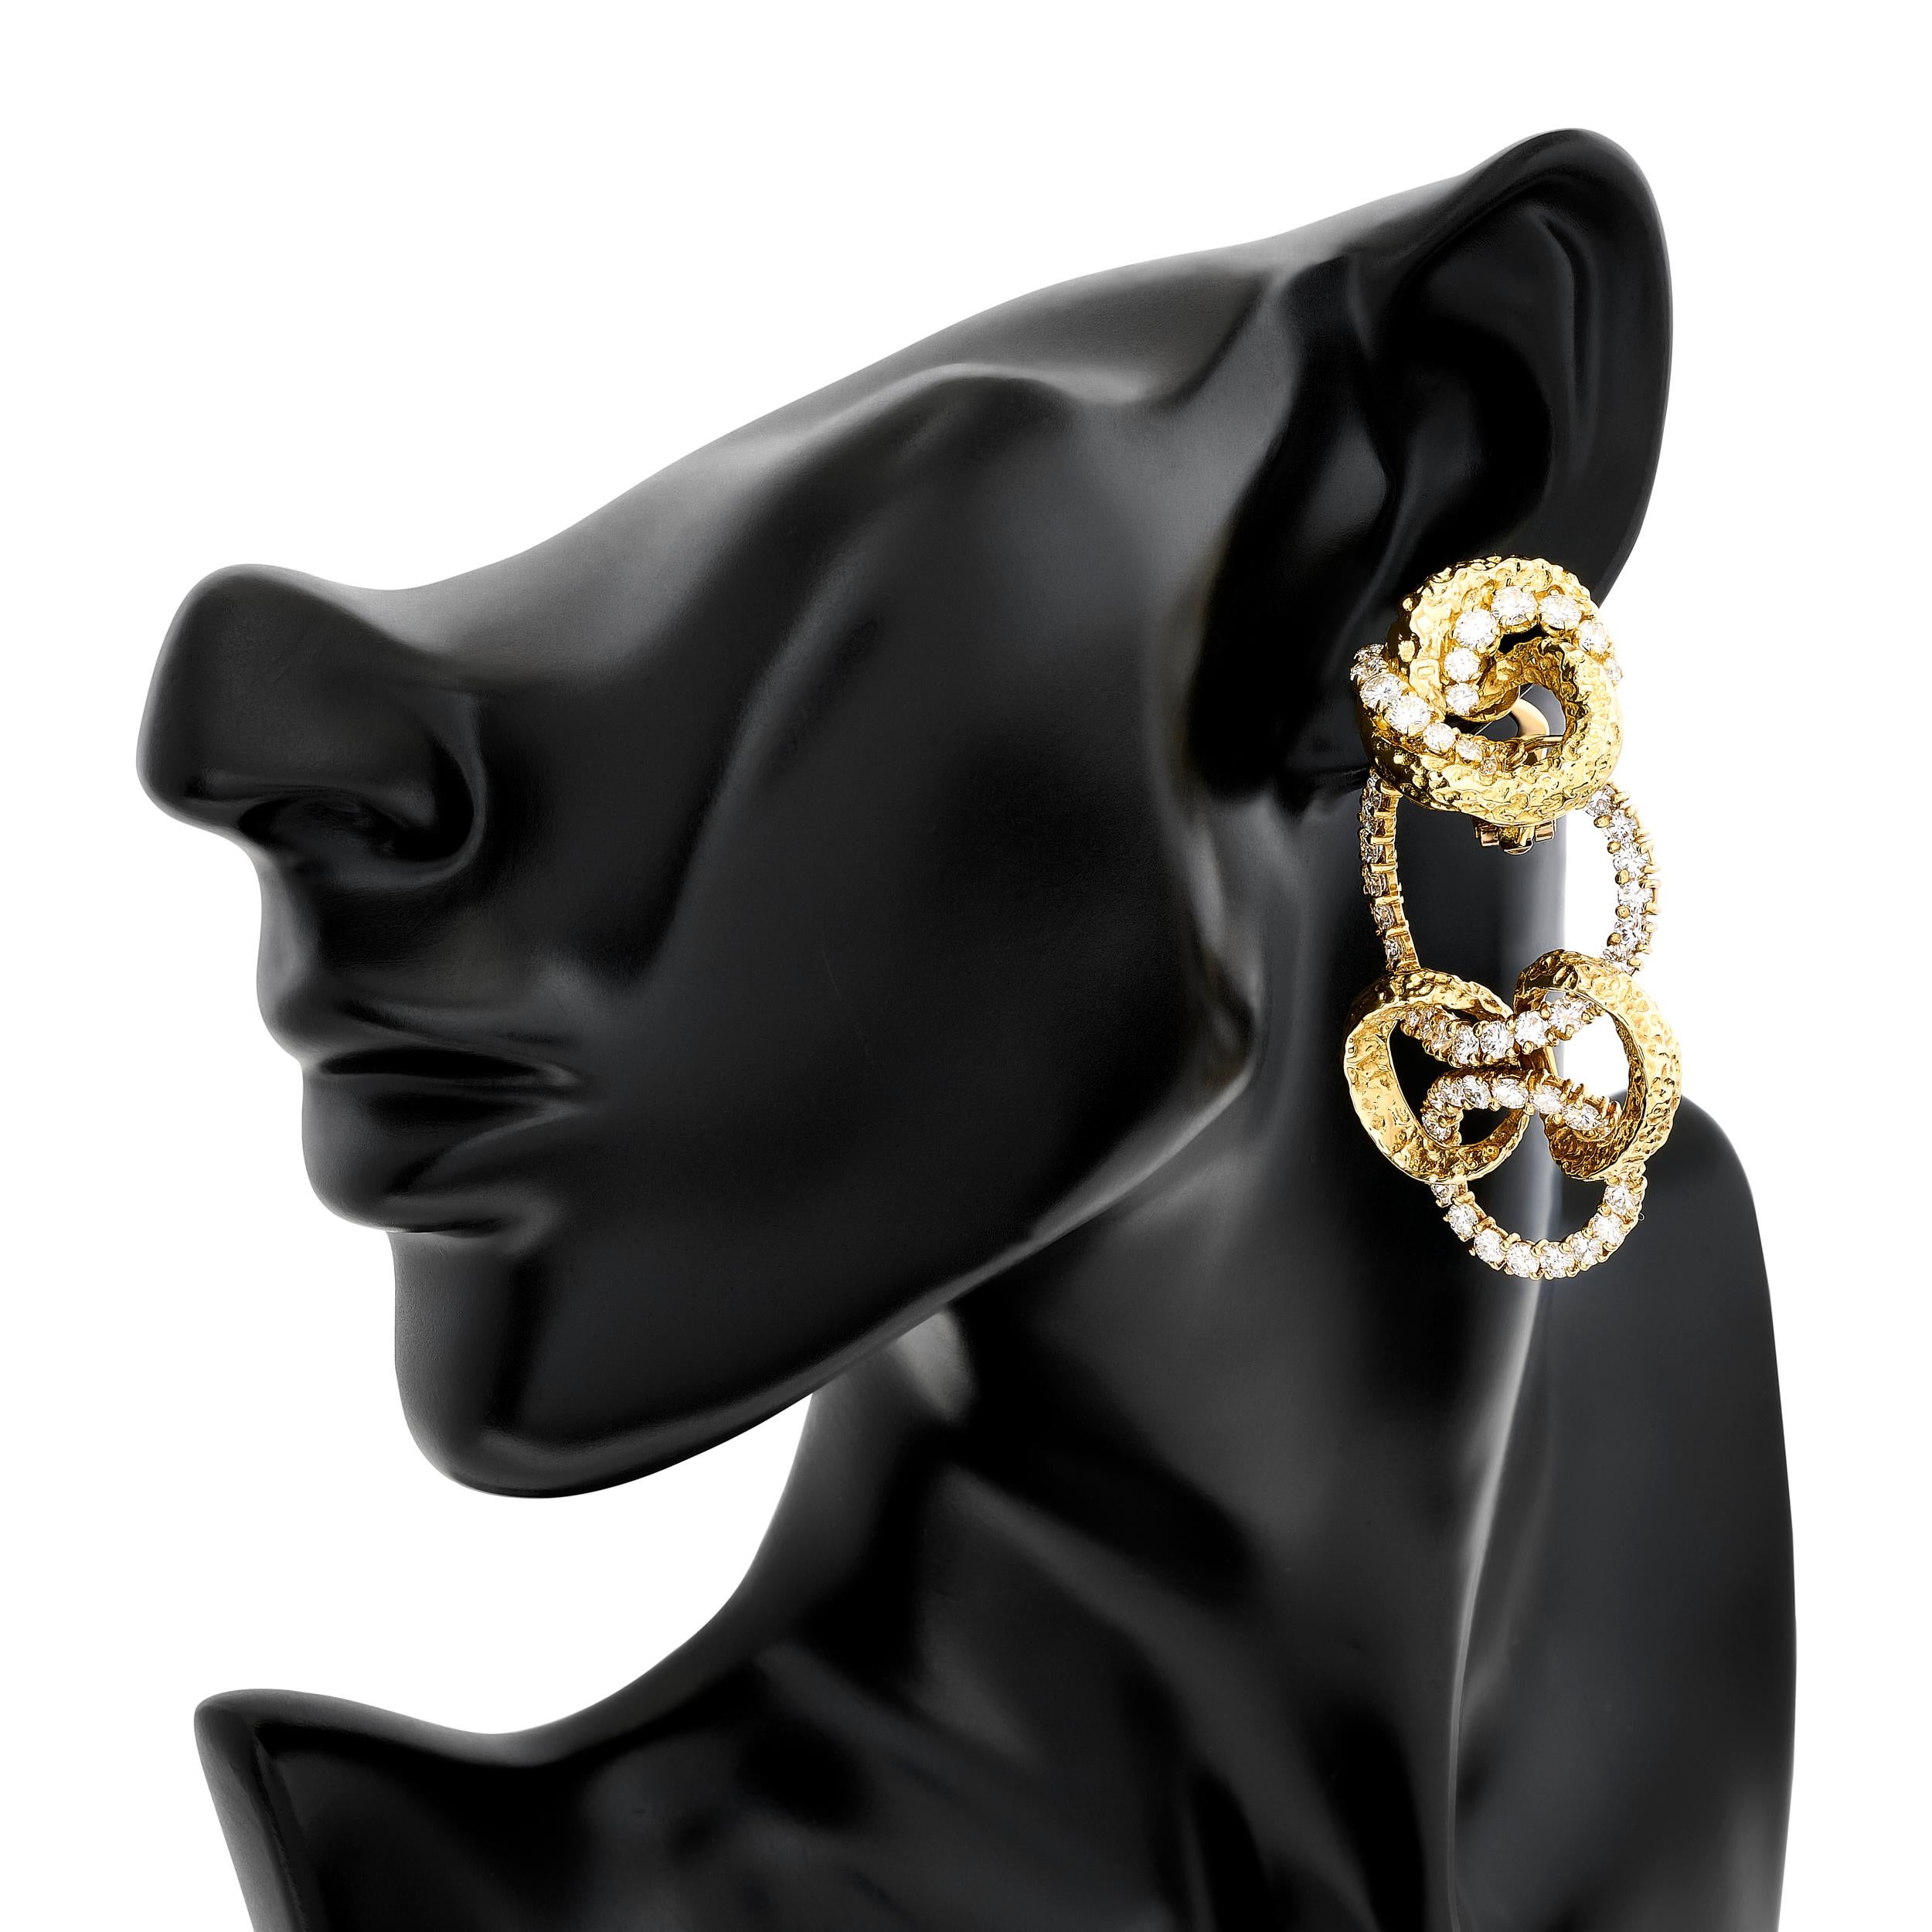 Rehaussez votre style avec ces boucles d'oreilles exquises de M-One. Fabriquées en or jaune 18 carats et ornées de diamants, leurs boucles amovibles ajoutent une touche de polyvalence. Passez sans effort du jour à la nuit, en faisant une déclaration